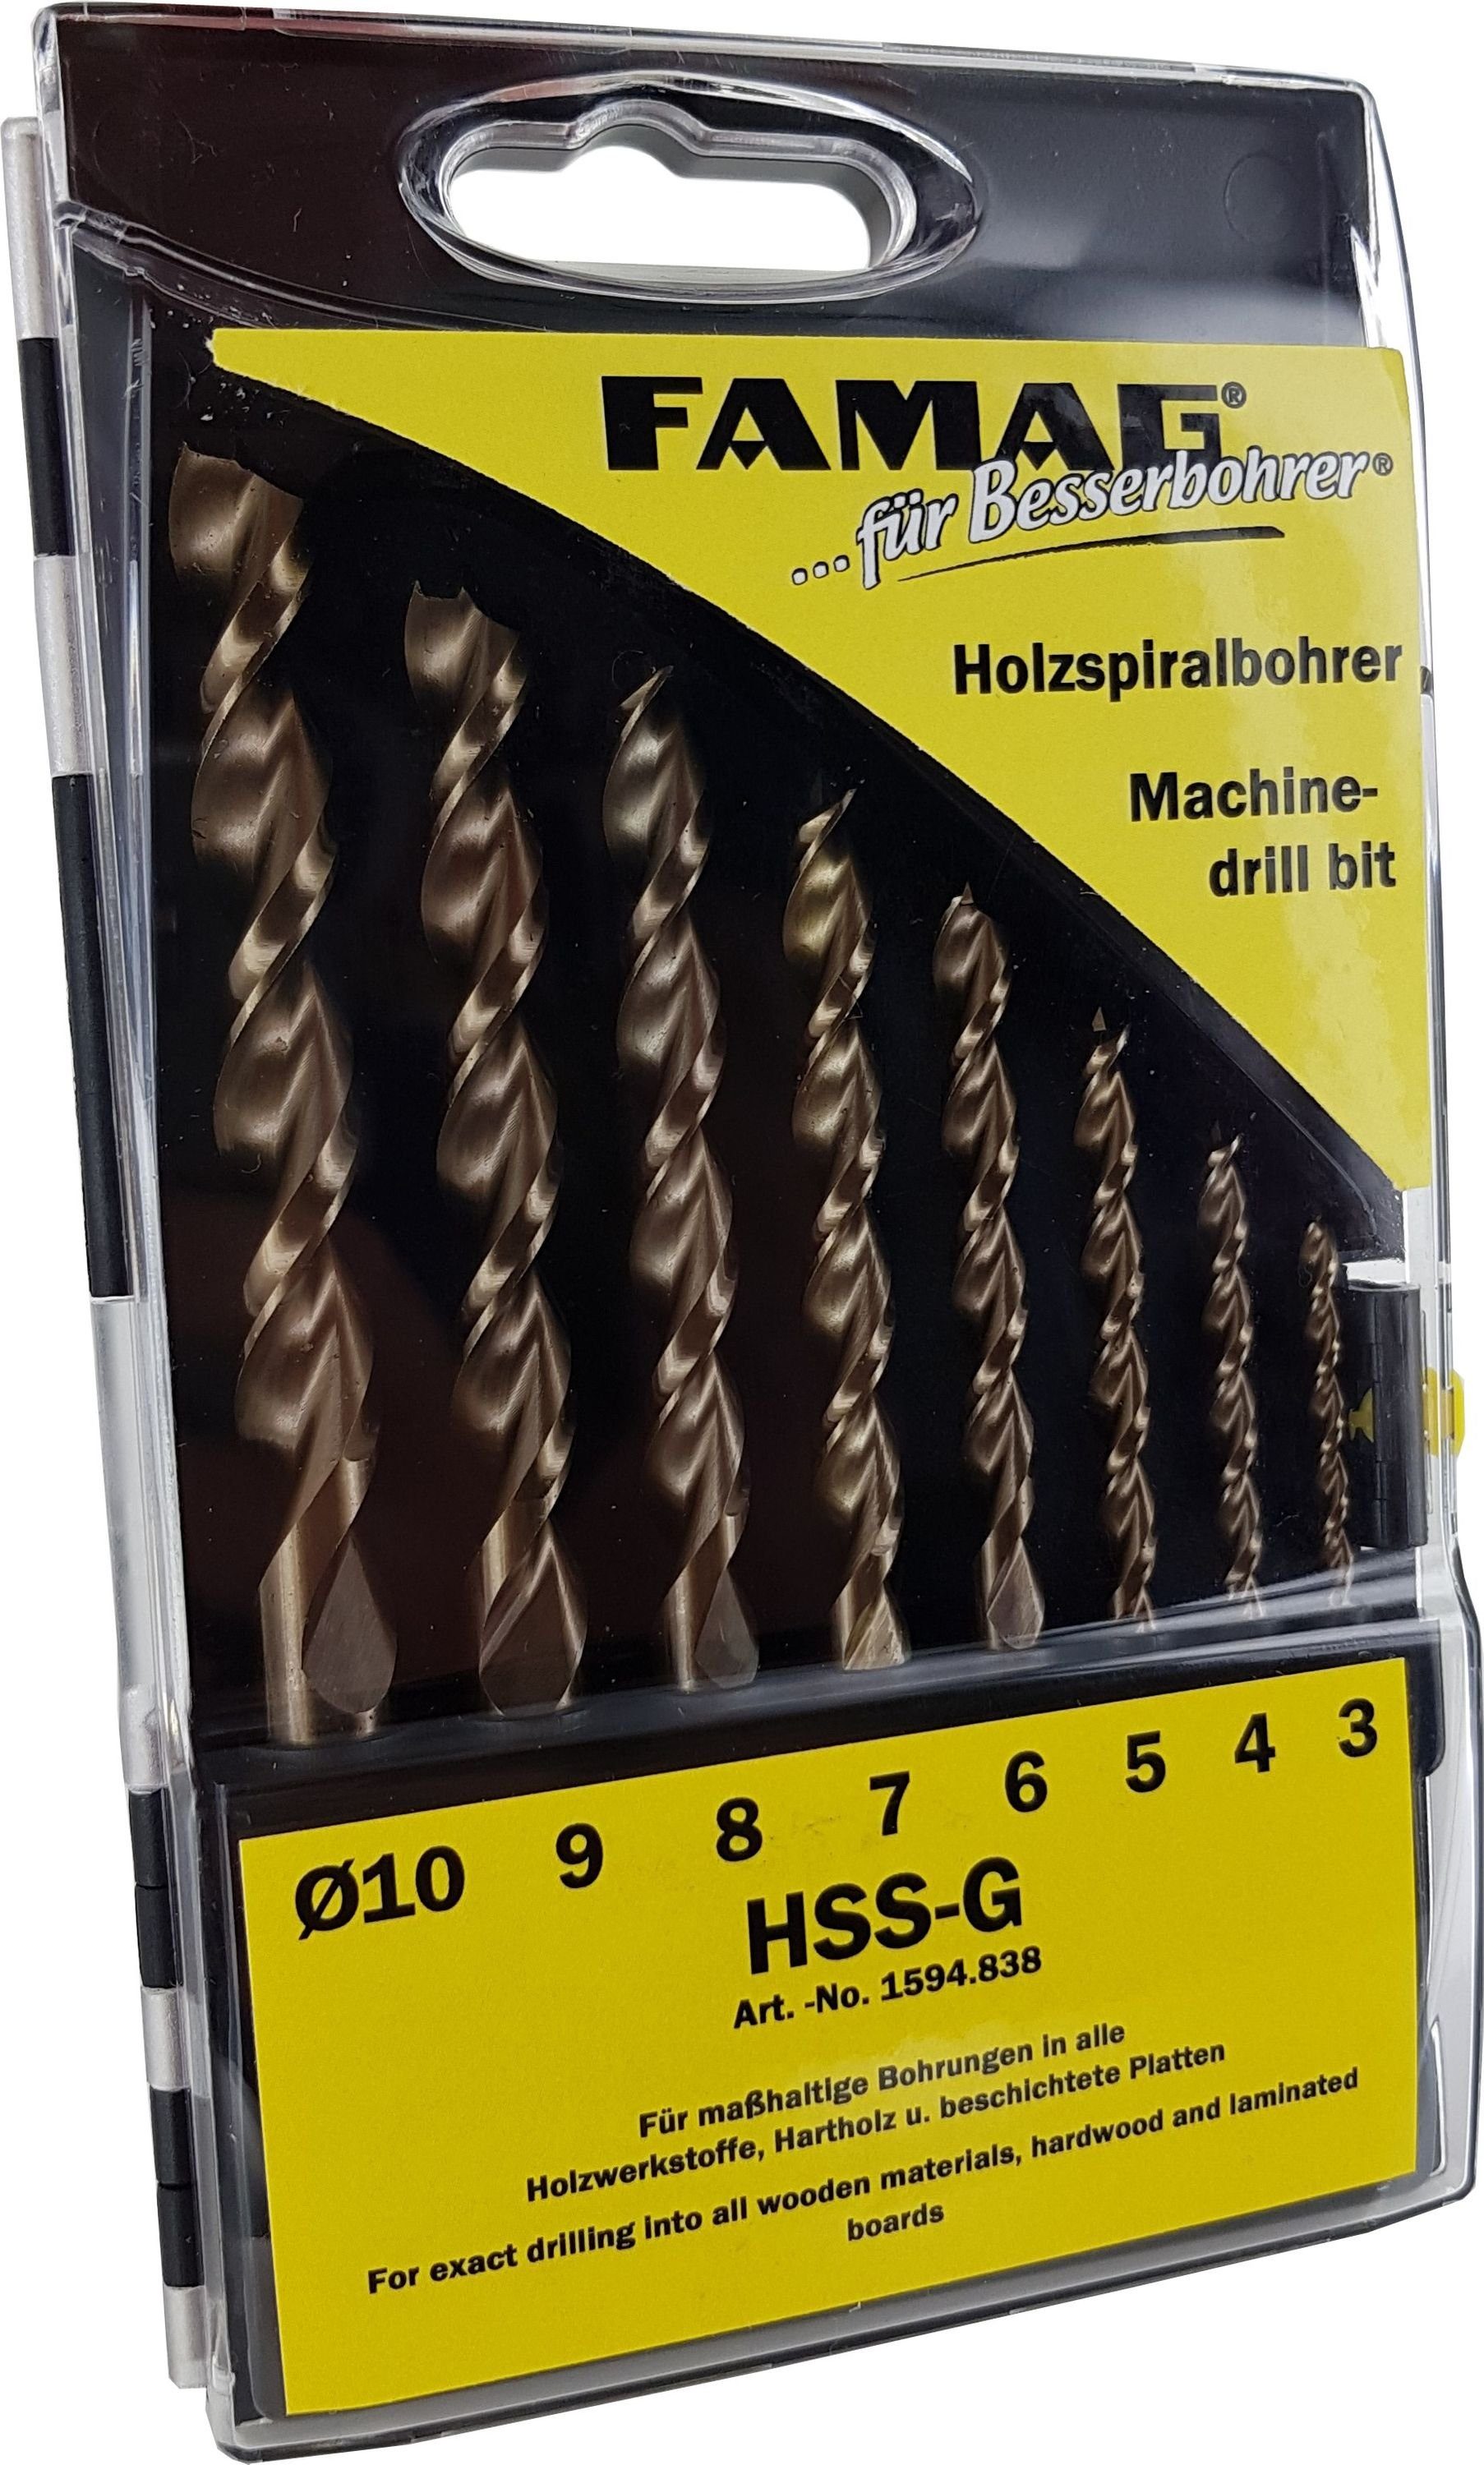 HSS-GHolzspiralbohrer 5-teilig 4-10, (Größe Ø FAMAG Holzbohrer für Set Holzwerkstoffe HSS-G, Famag